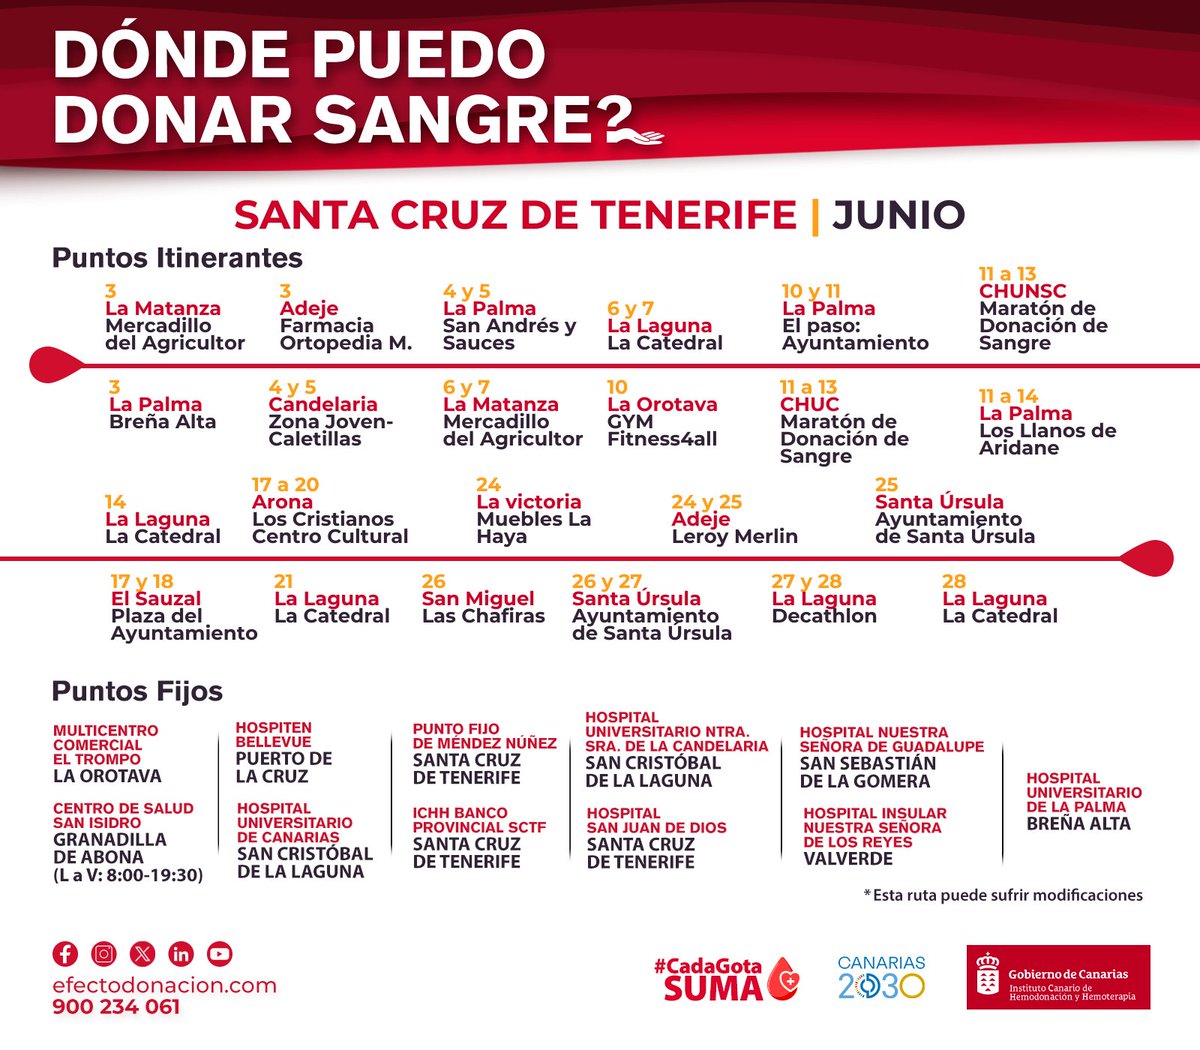 🩸#Ashoteldonasangre ¿Pensando en donar sangre el mes que viene? Aquí tienes los puntos itinerantes de junio para donar sangre en #Tenerife y #LaPalma, así como los fijos en #SantaCruzdeTenerife, ruta organizada por el @ichhcanarias
#EfectoDonación #Cadagotasuma #RSCAshotel